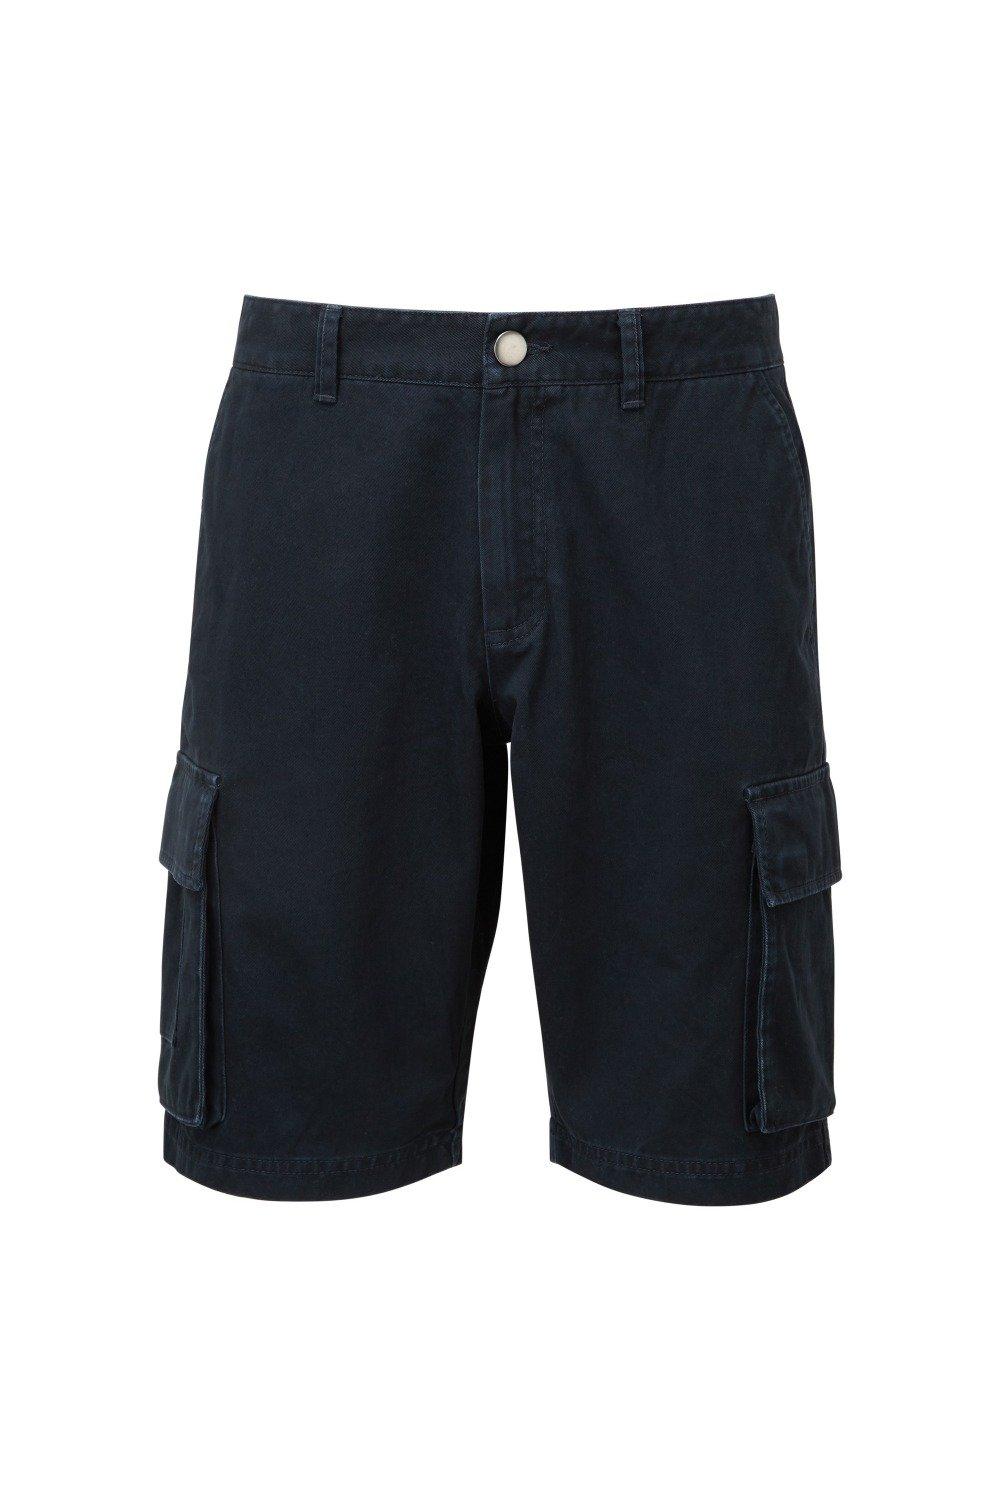 Грузовые шорты Asquith & Fox, темно-синий шорты карго мужские однотонные свободные штаны с множеством карманов на пуговицах с широкими штанинами декор летние